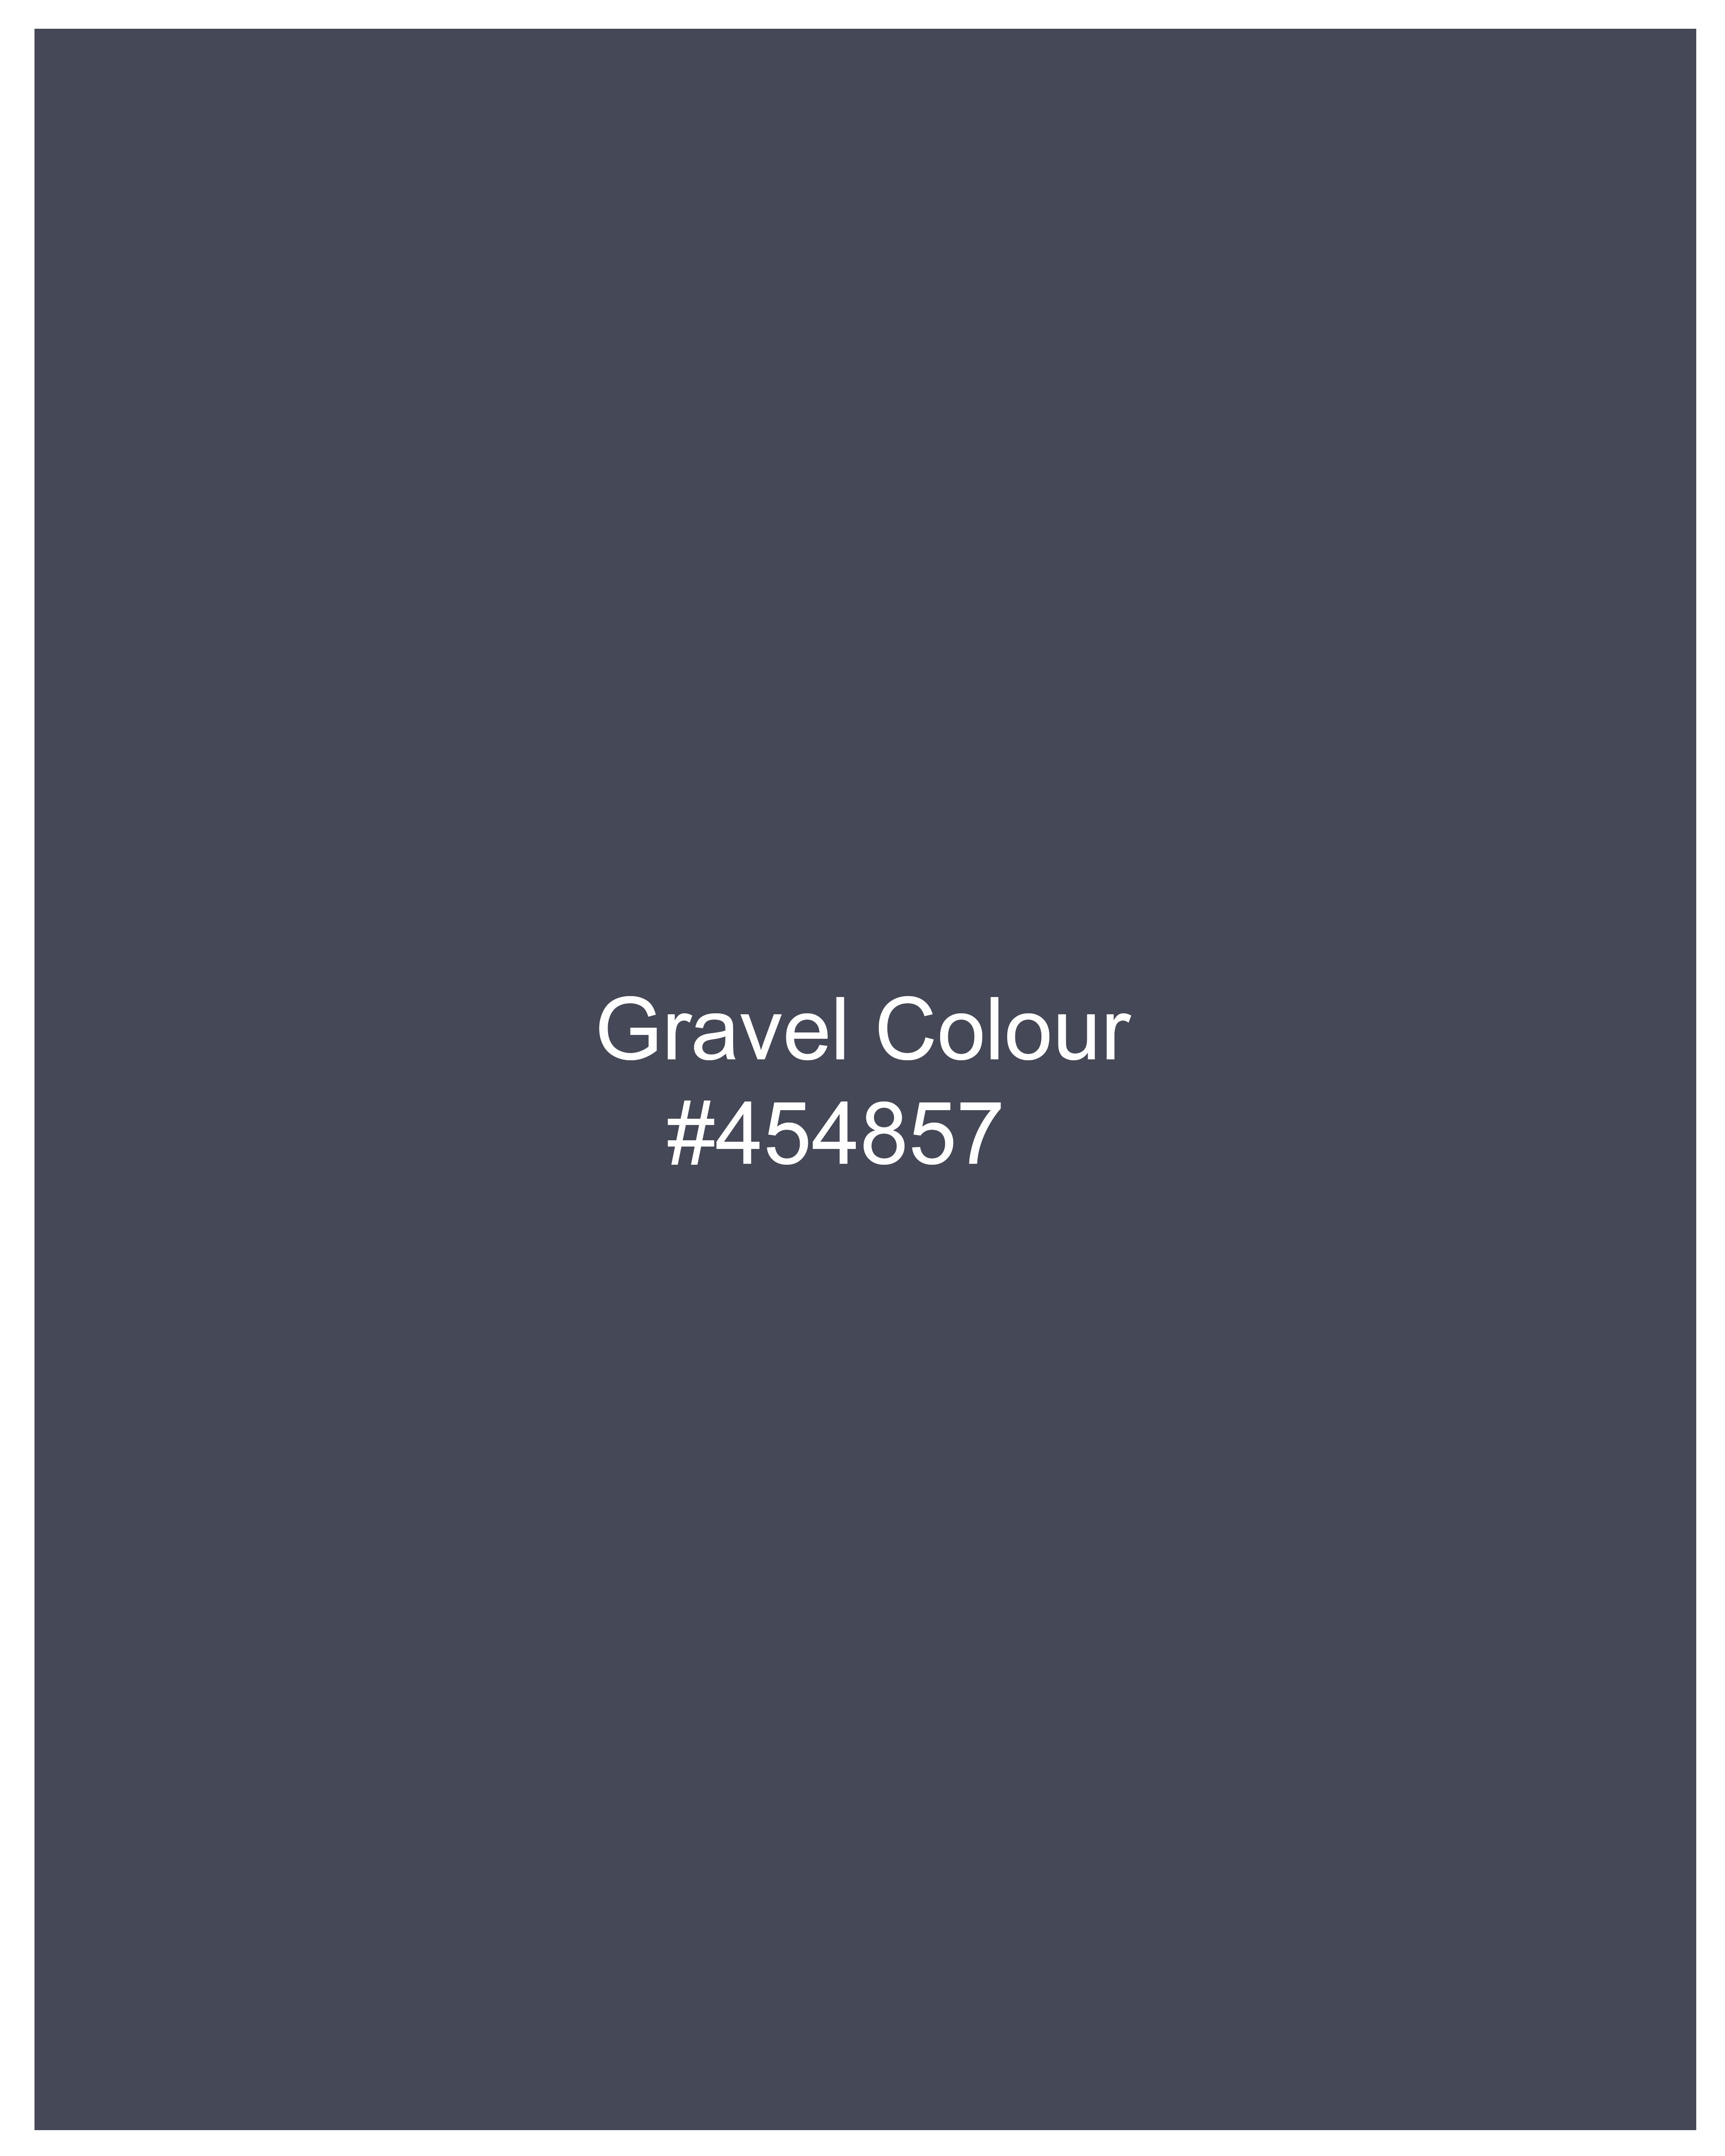 Gravel Gray Luxurious Linen Shirt 9828-38, 9828-H-38, 9828-39, 9828-H-39, 9828-40, 9828-H-40, 9828-42, 9828-H-42, 9828-44, 9828-H-44, 9828-46, 9828-H-46, 9828-48, 9828-H-48, 9828-50, 9828-H-50, 9828-52, 9828-H-52